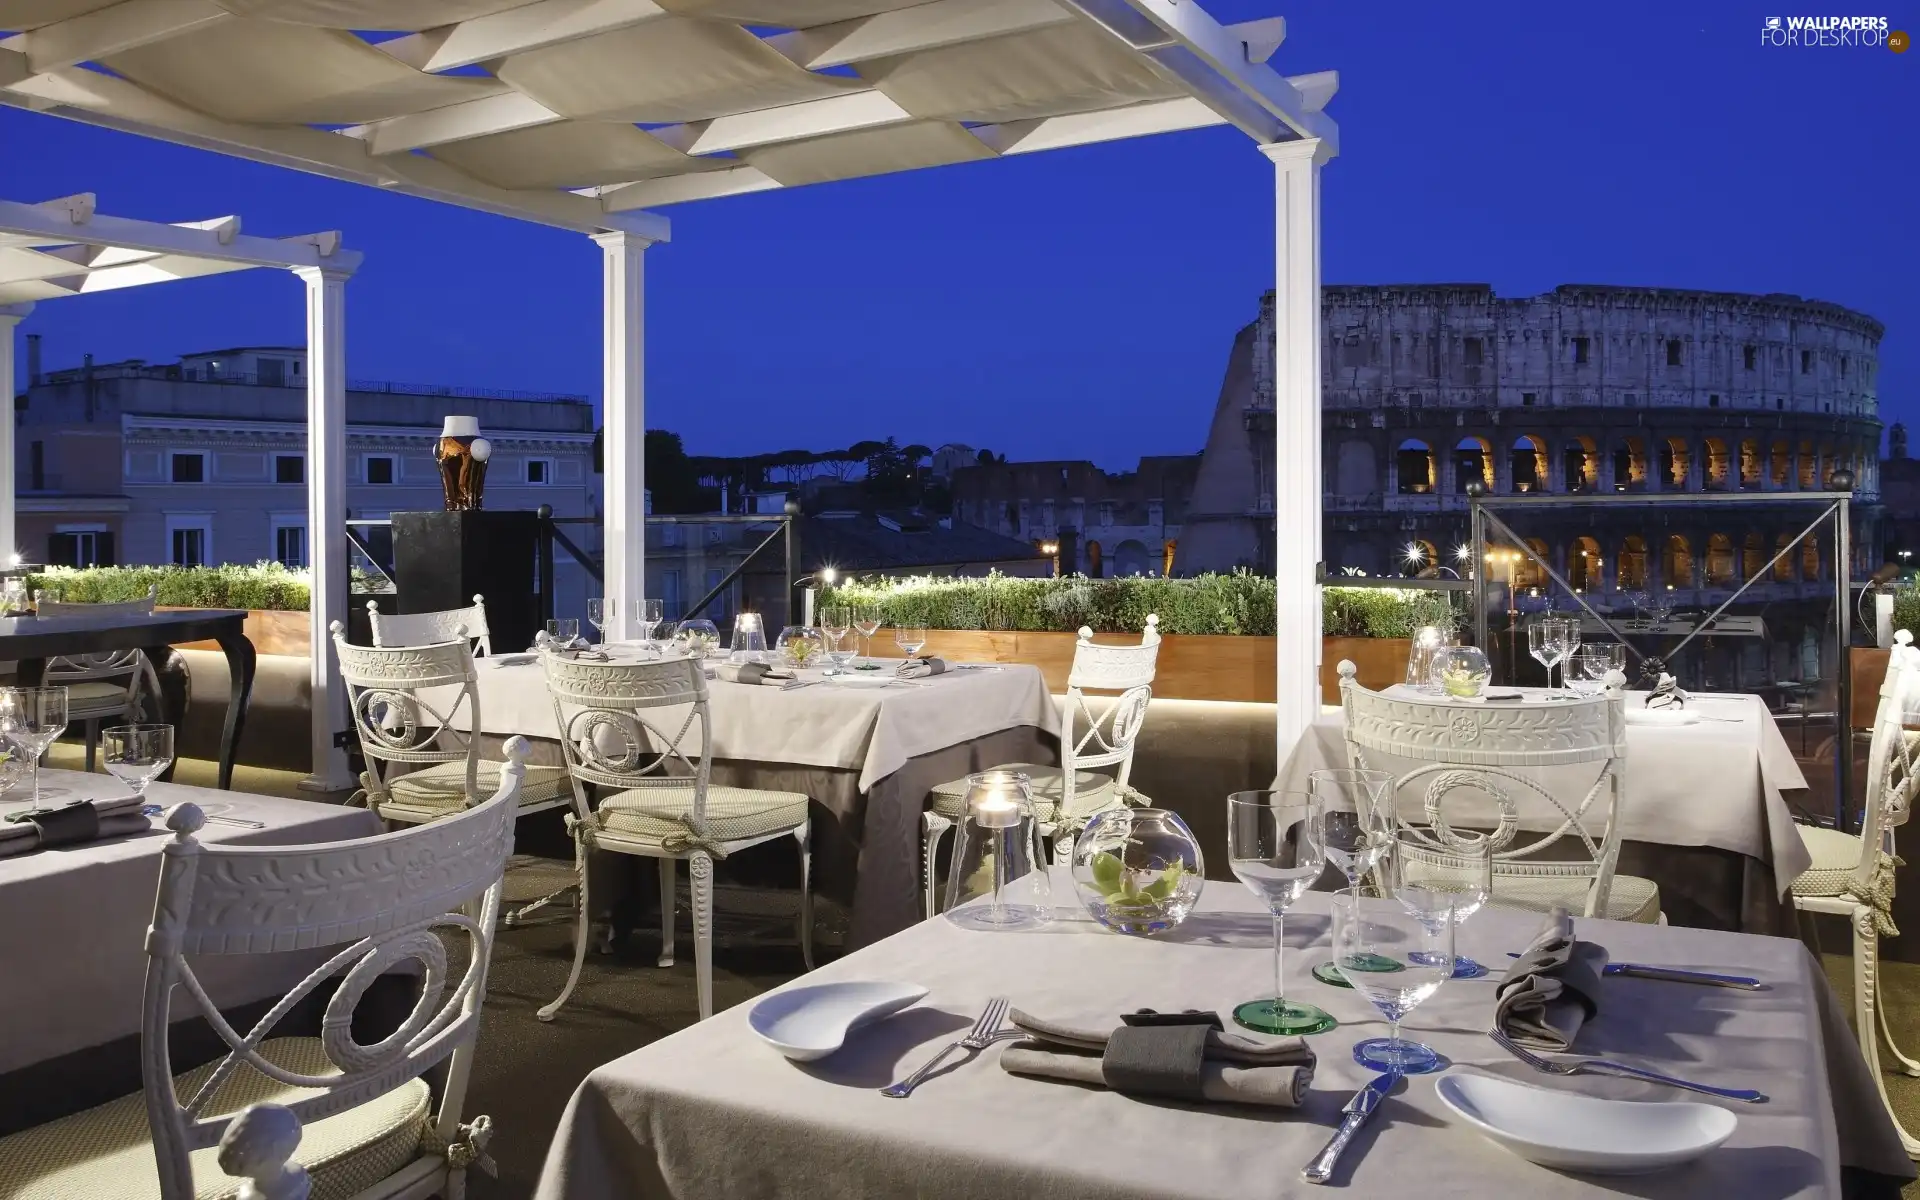 Restaurant, Coloseum, Rome, evening